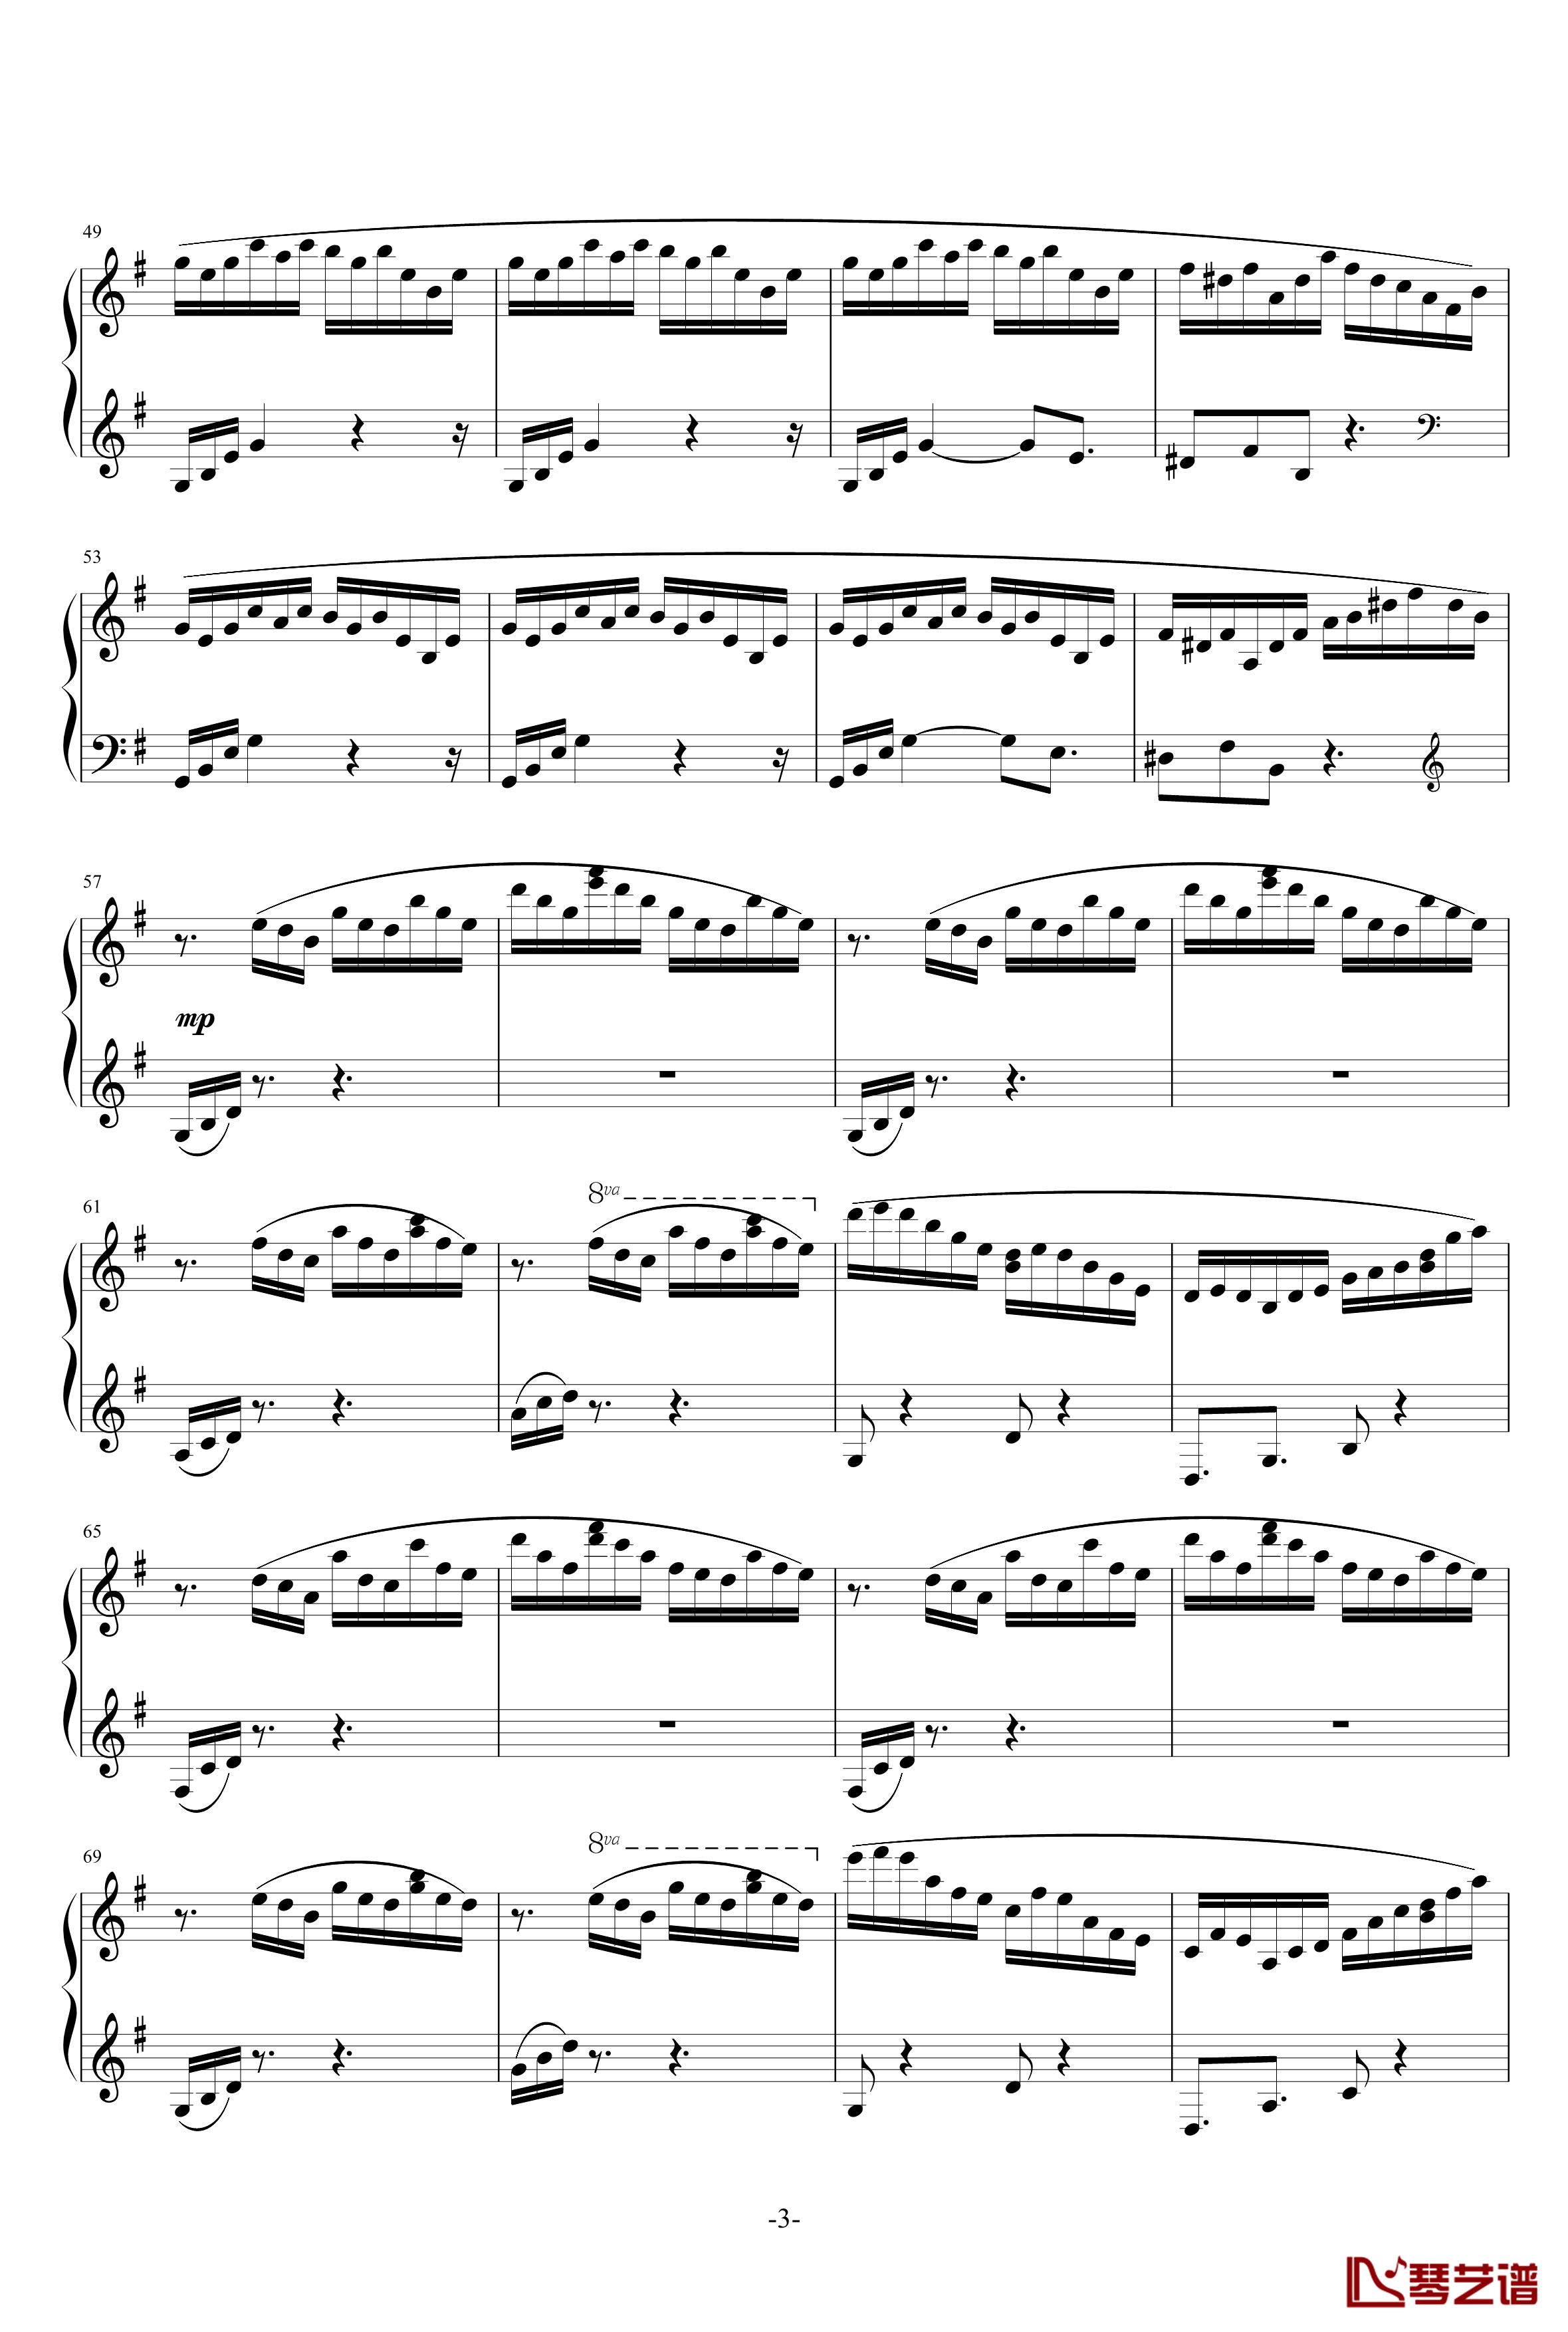 练习曲第1首钢琴谱-乐之琴3